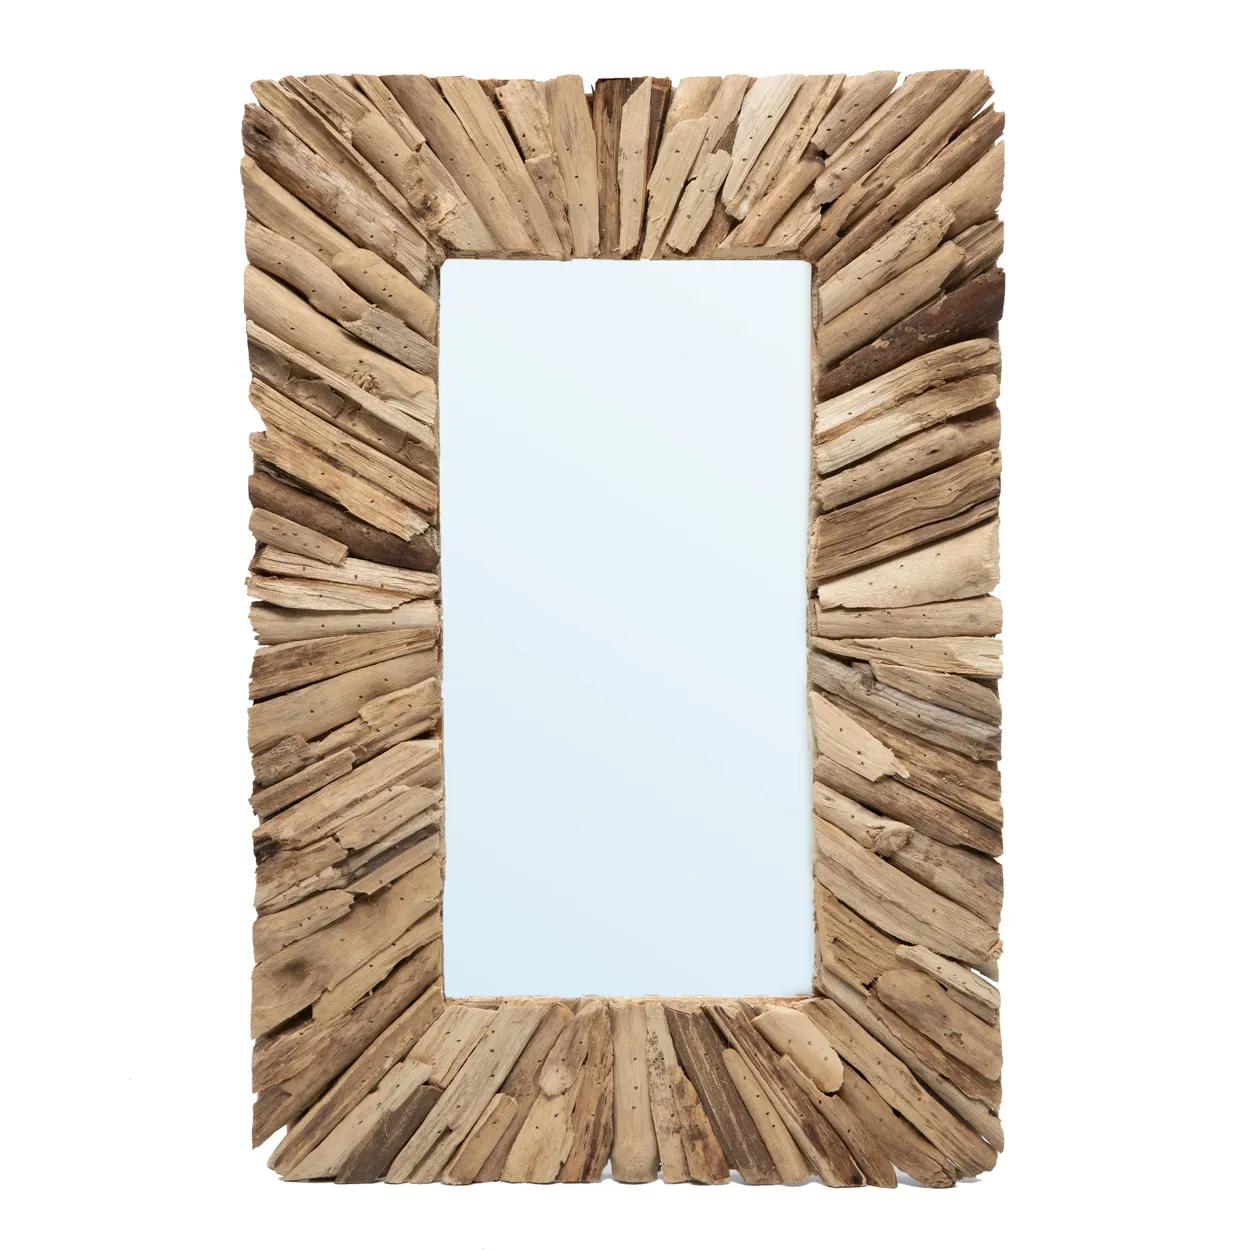 Treibholz Spiegel mit Rahmen - Natur - M